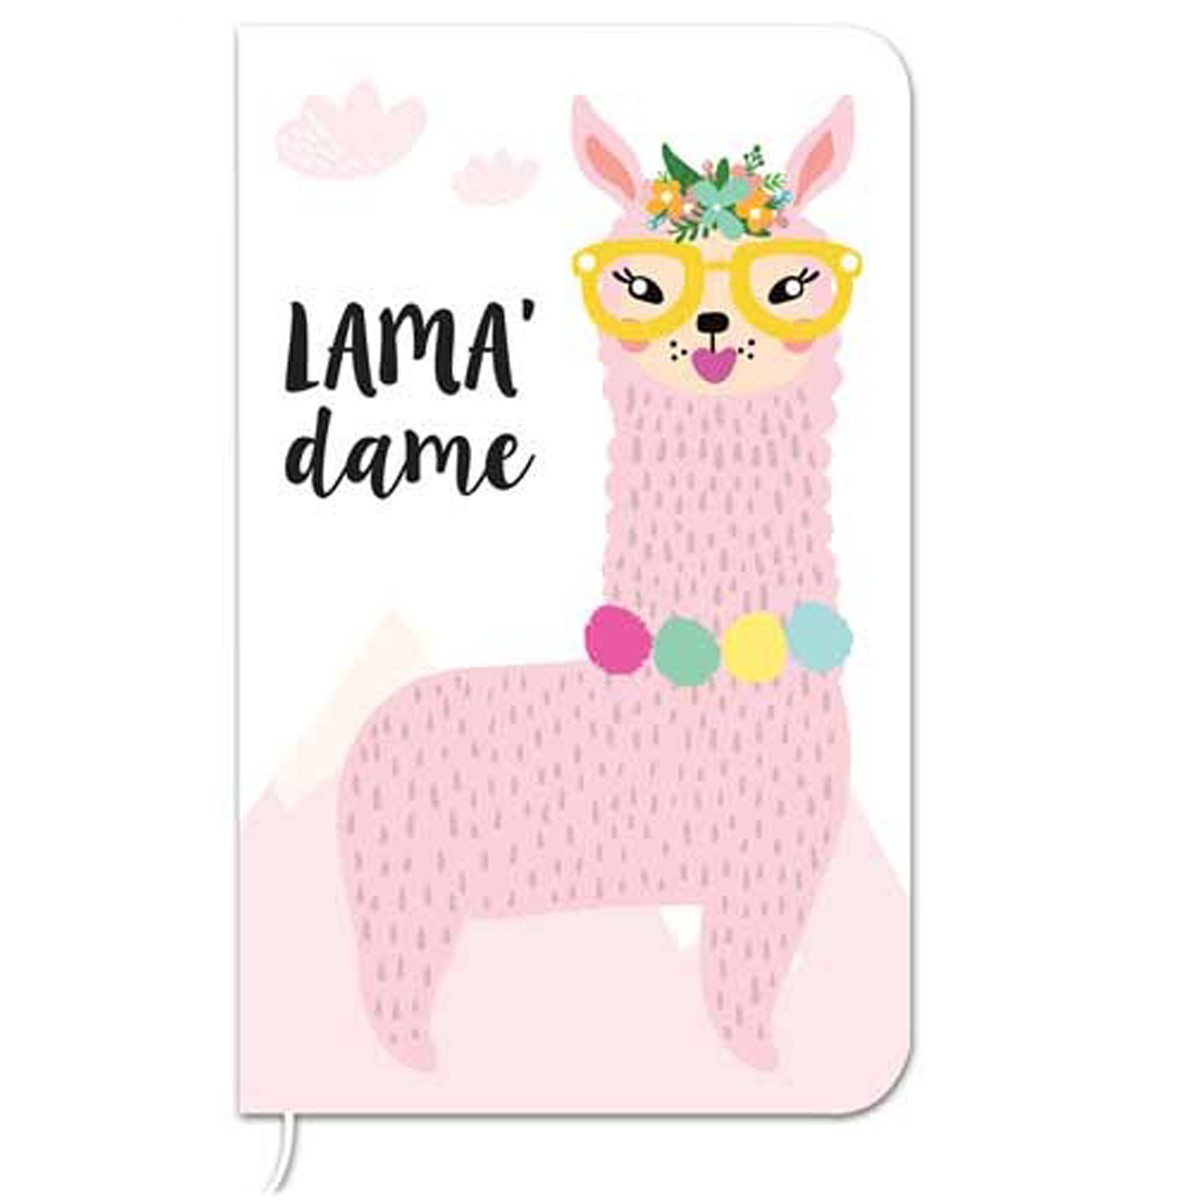 Carnet de notes \'Lama Mania\' blanc rose (Lama\' dame) - 145x9 cm (72 pages) - [Q0873]